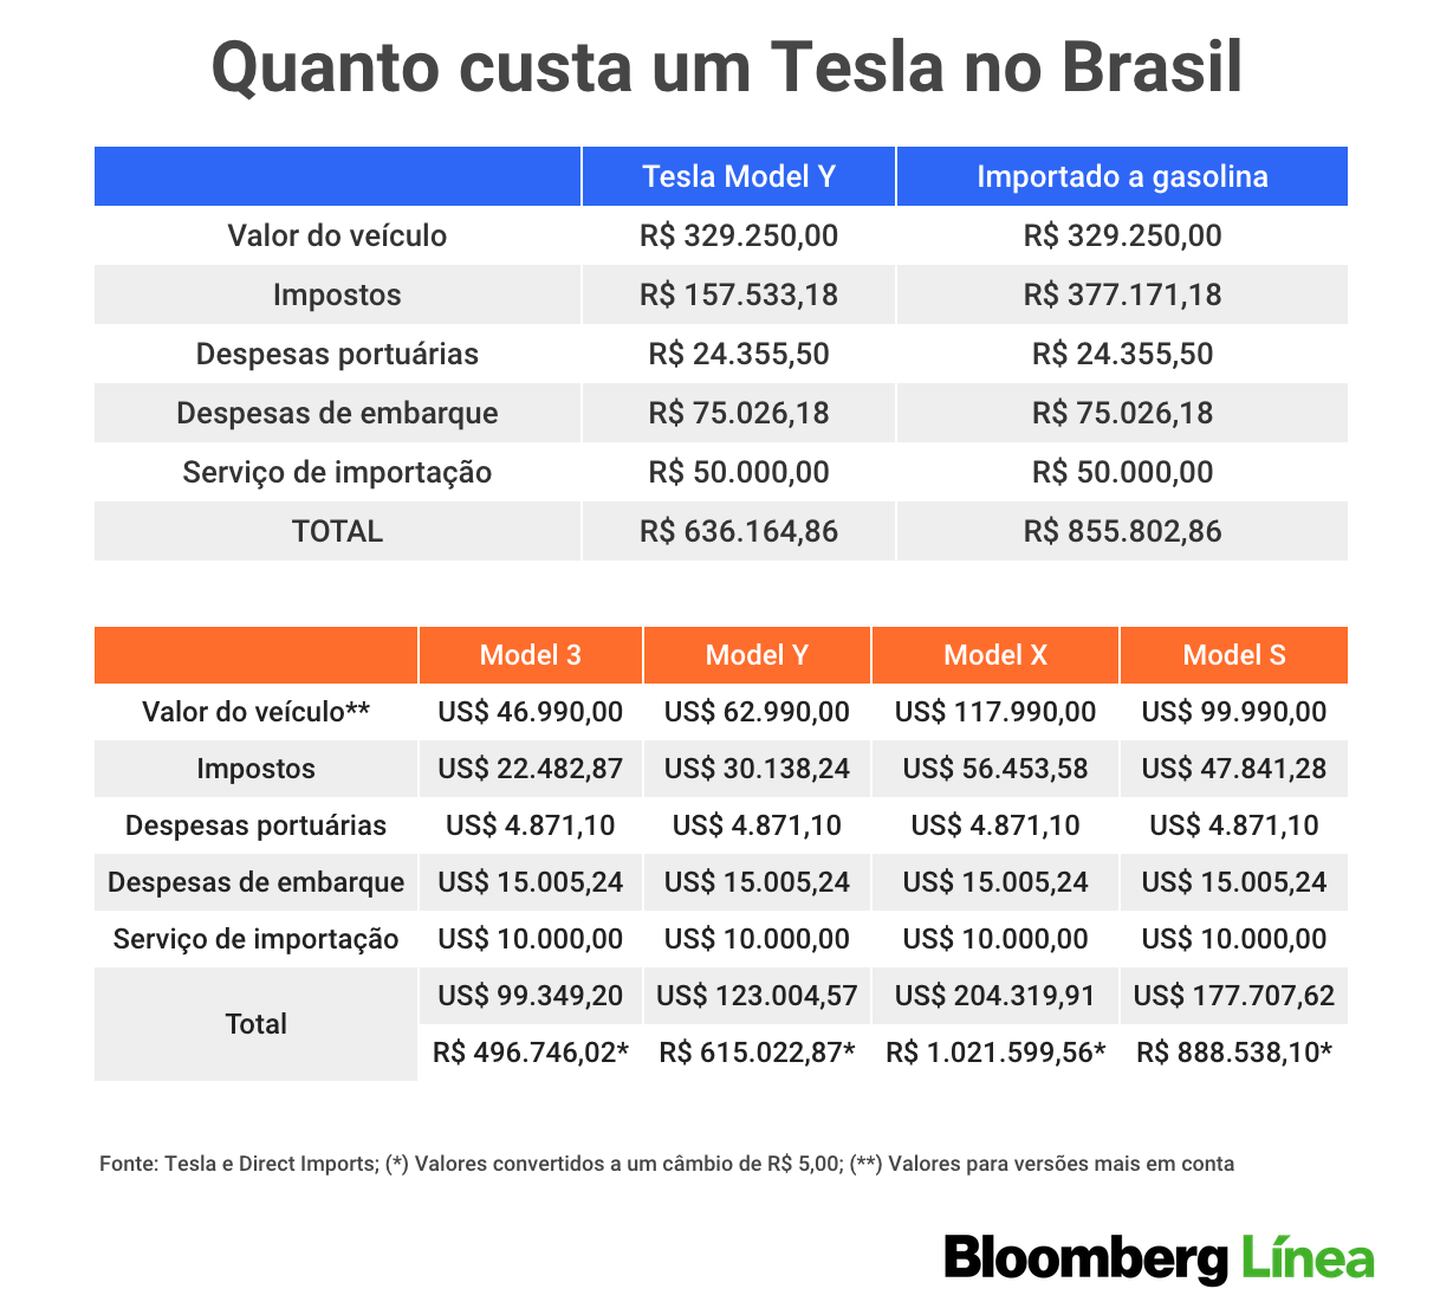 ¿Cuánto cuestan los principales modelos de Tesla en Brasil?